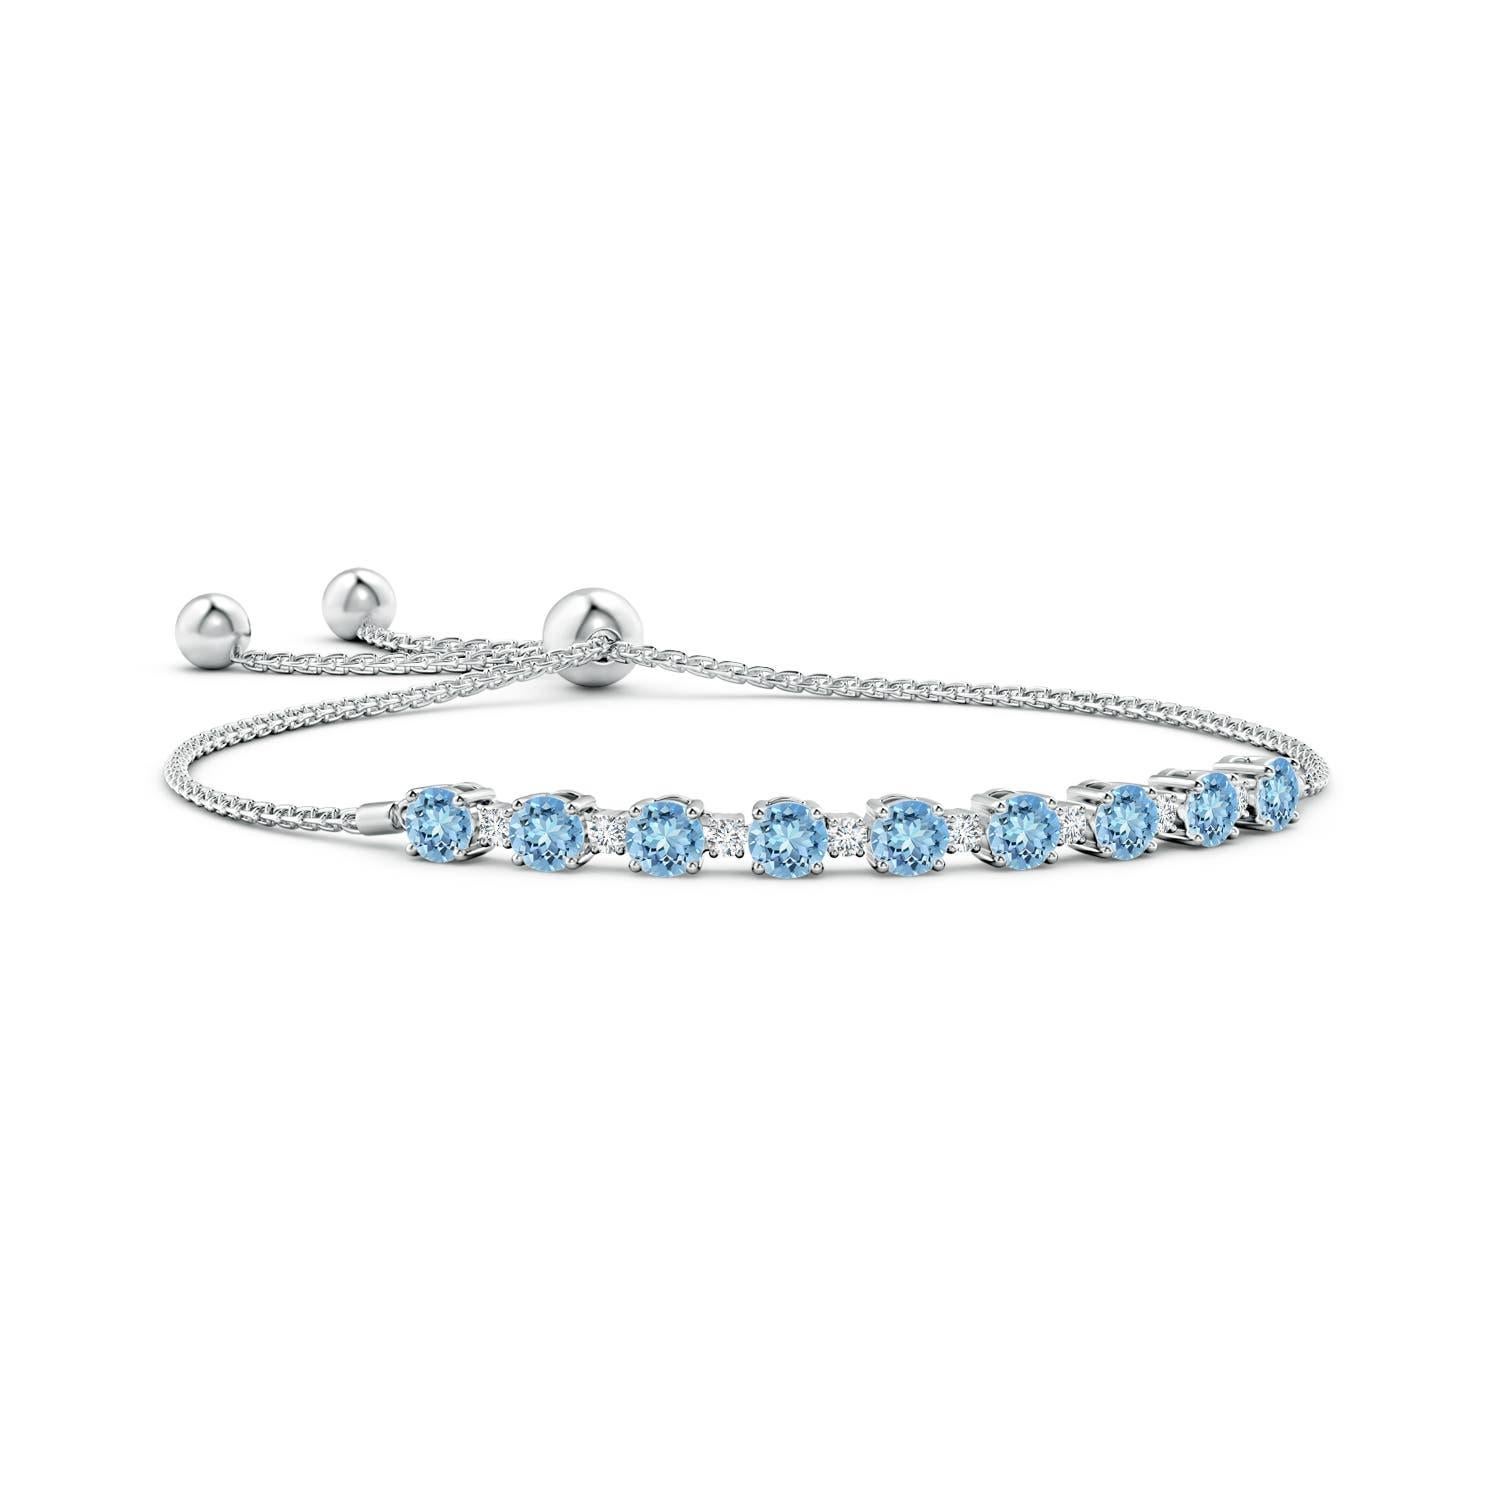 Meeresblaue Aquamarine und glitzernde Diamanten vereinen sich auf diesem Tennis-Bolo-Armband aus 14 Karat Weißgold. Sie sind abwechselnd mit Zacken besetzt und sorgen für einen klassischen Look. Dieses Armband ist verstellbar und passt den meisten